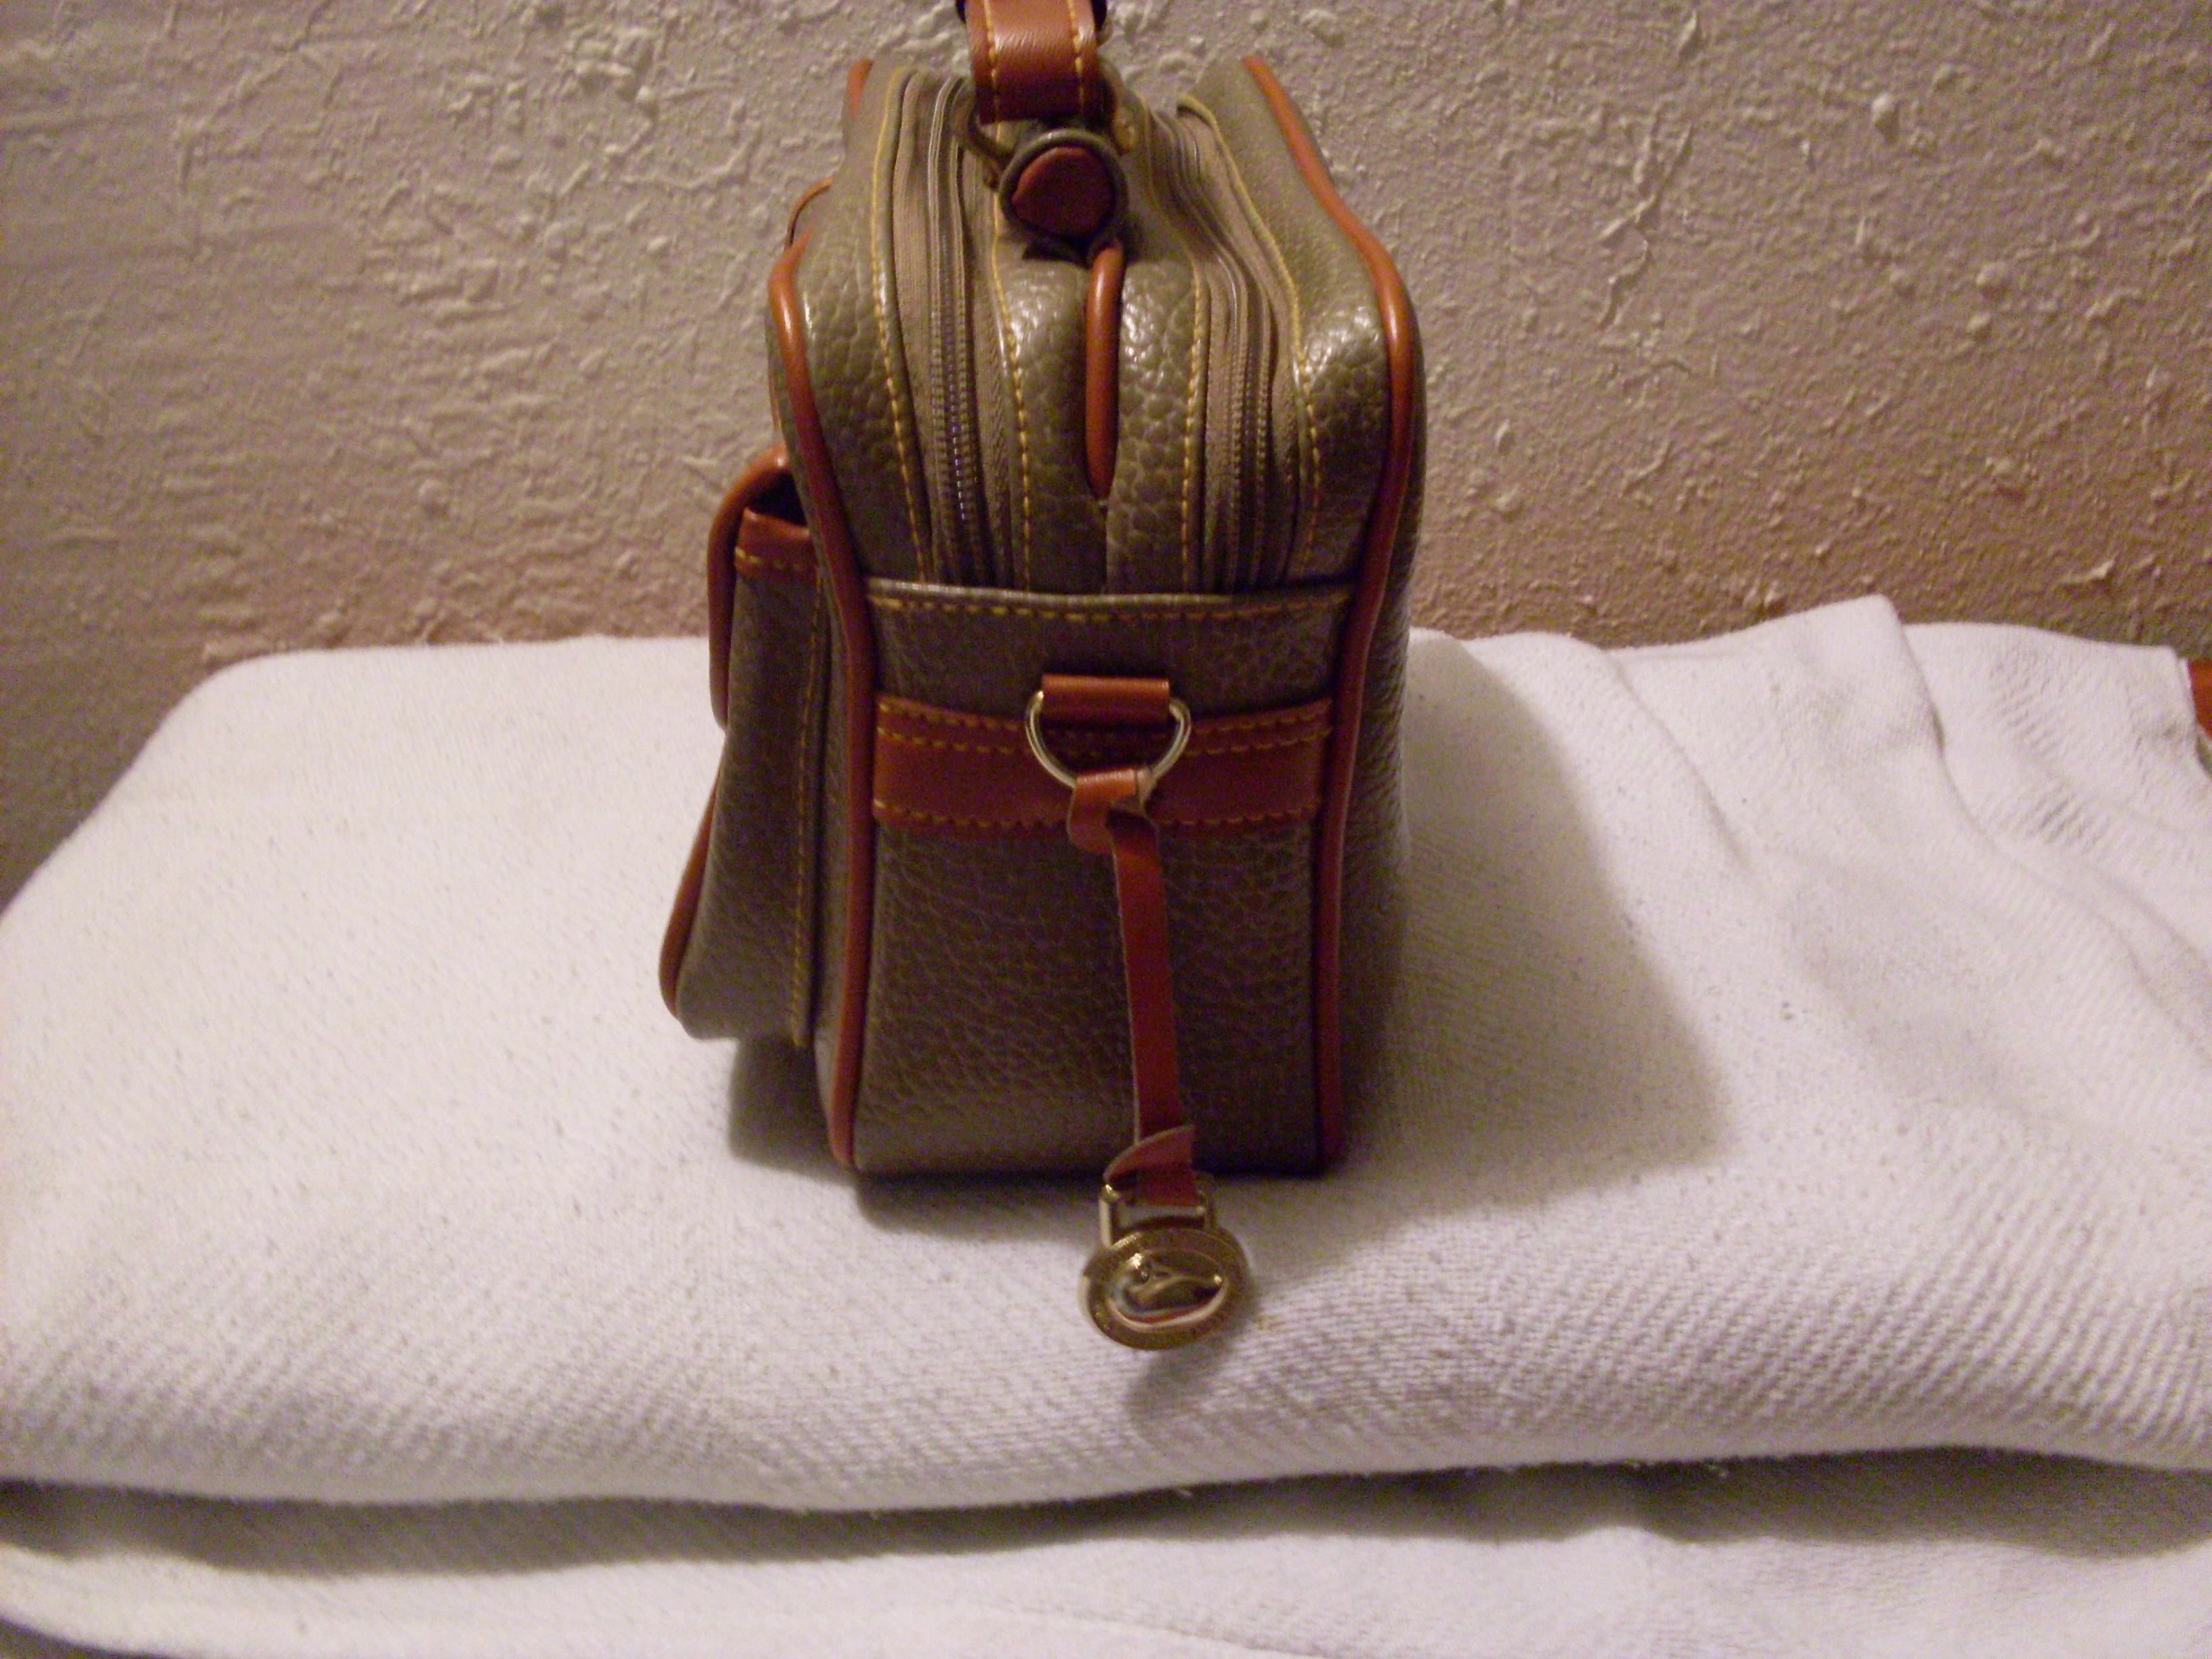 I Bought A Fake Vintage Dooney & Bourke Bag - Accidental Reseller